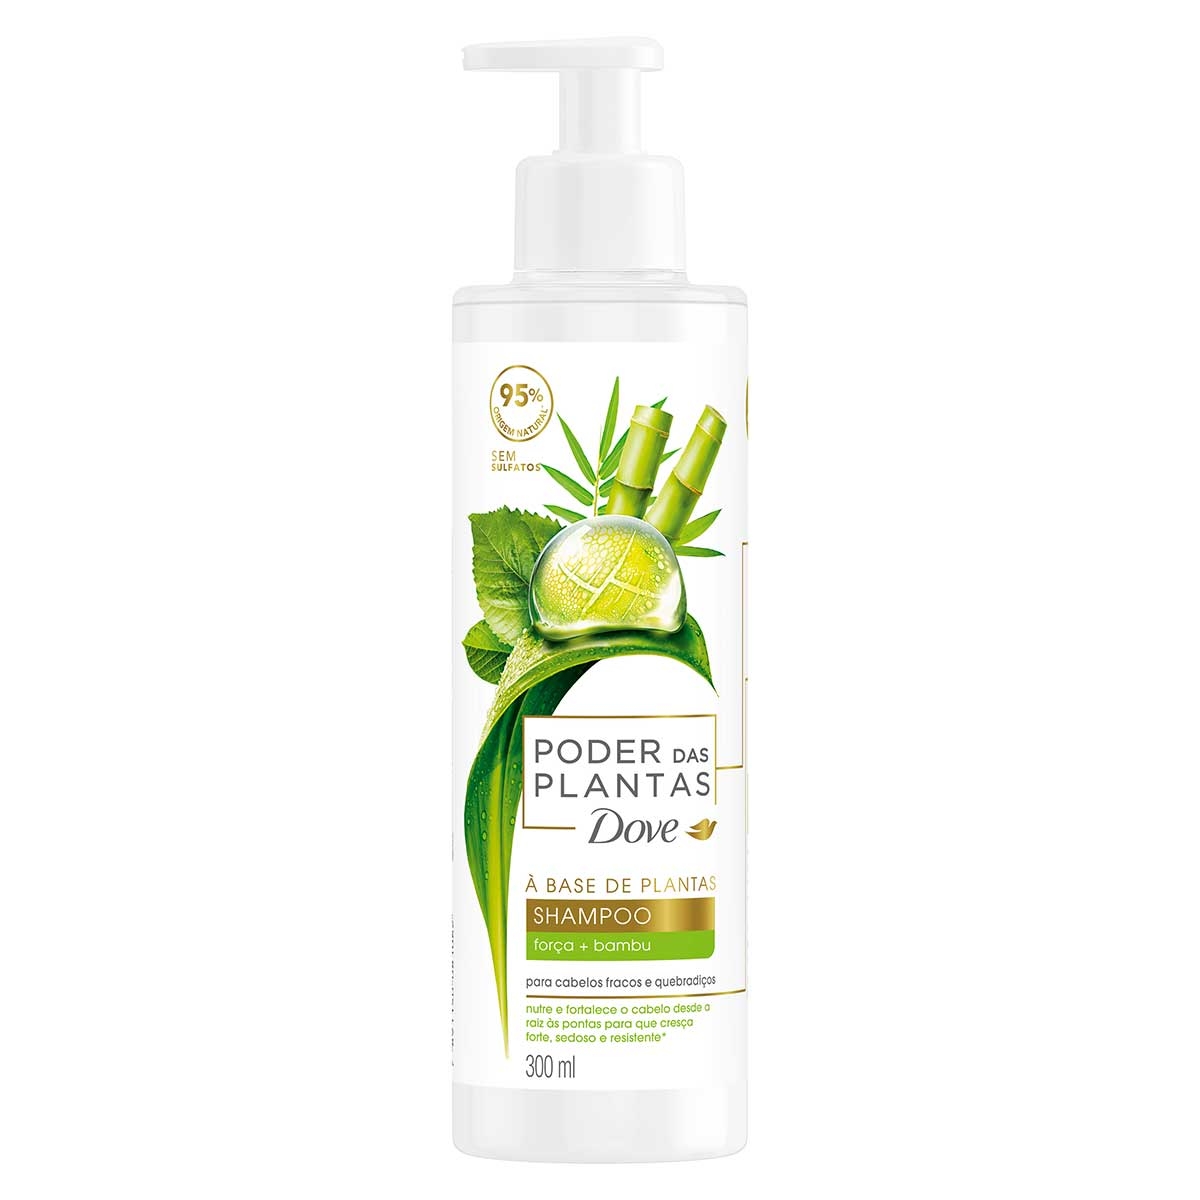 Shampoo Dove Poder das Plantas Força + Bambu com 300ml 300ml